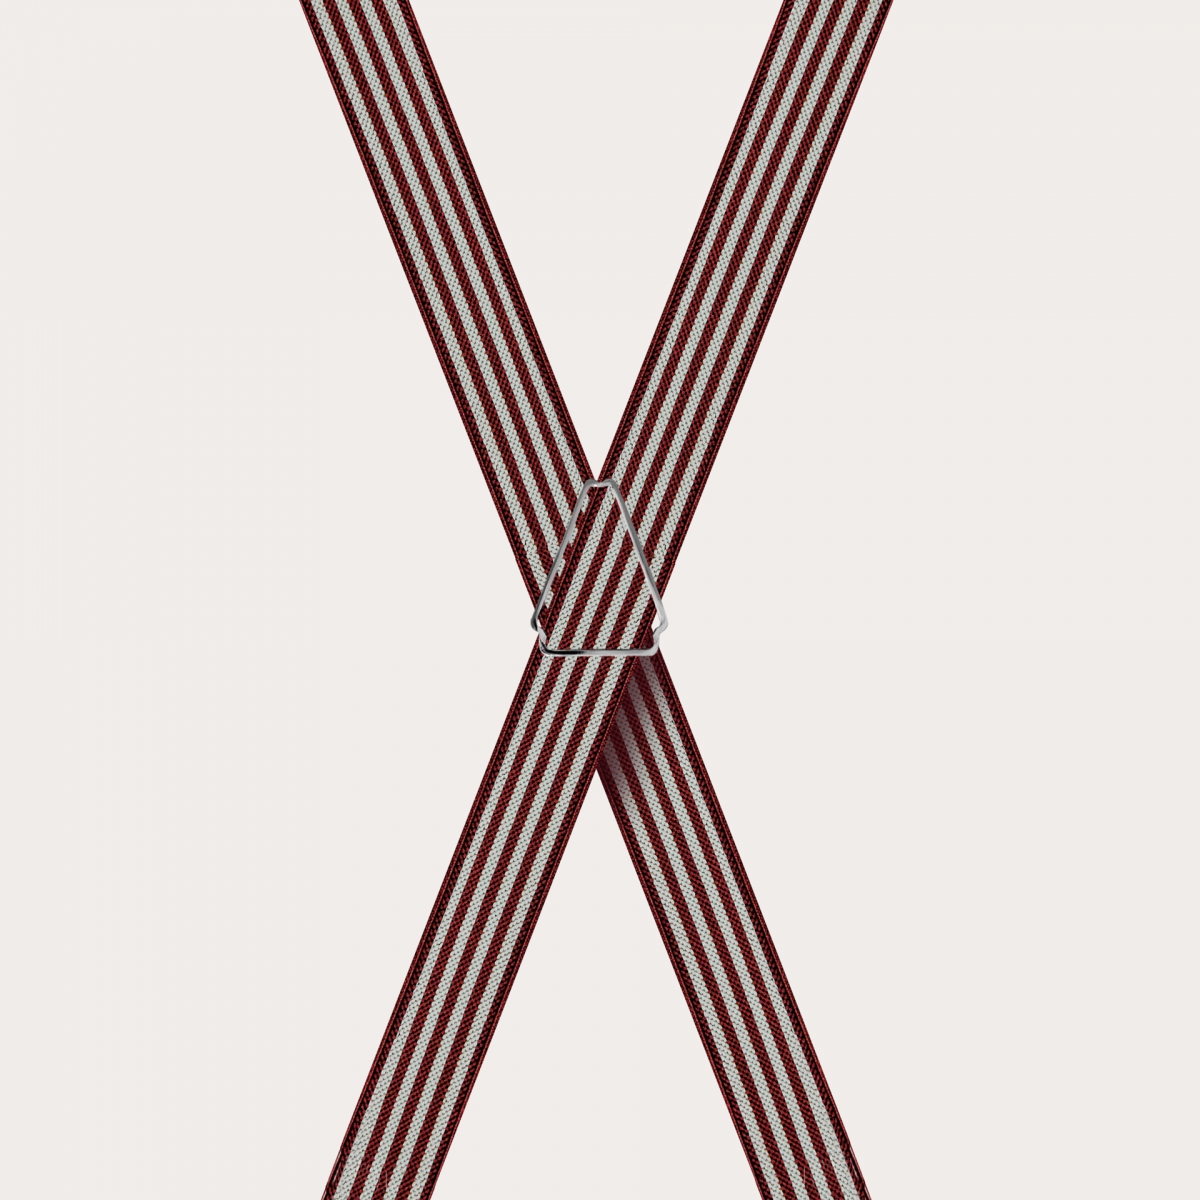 BRUCLE Tirantes en forma de X para niños y adolescentes con rayas, burdeos y perla